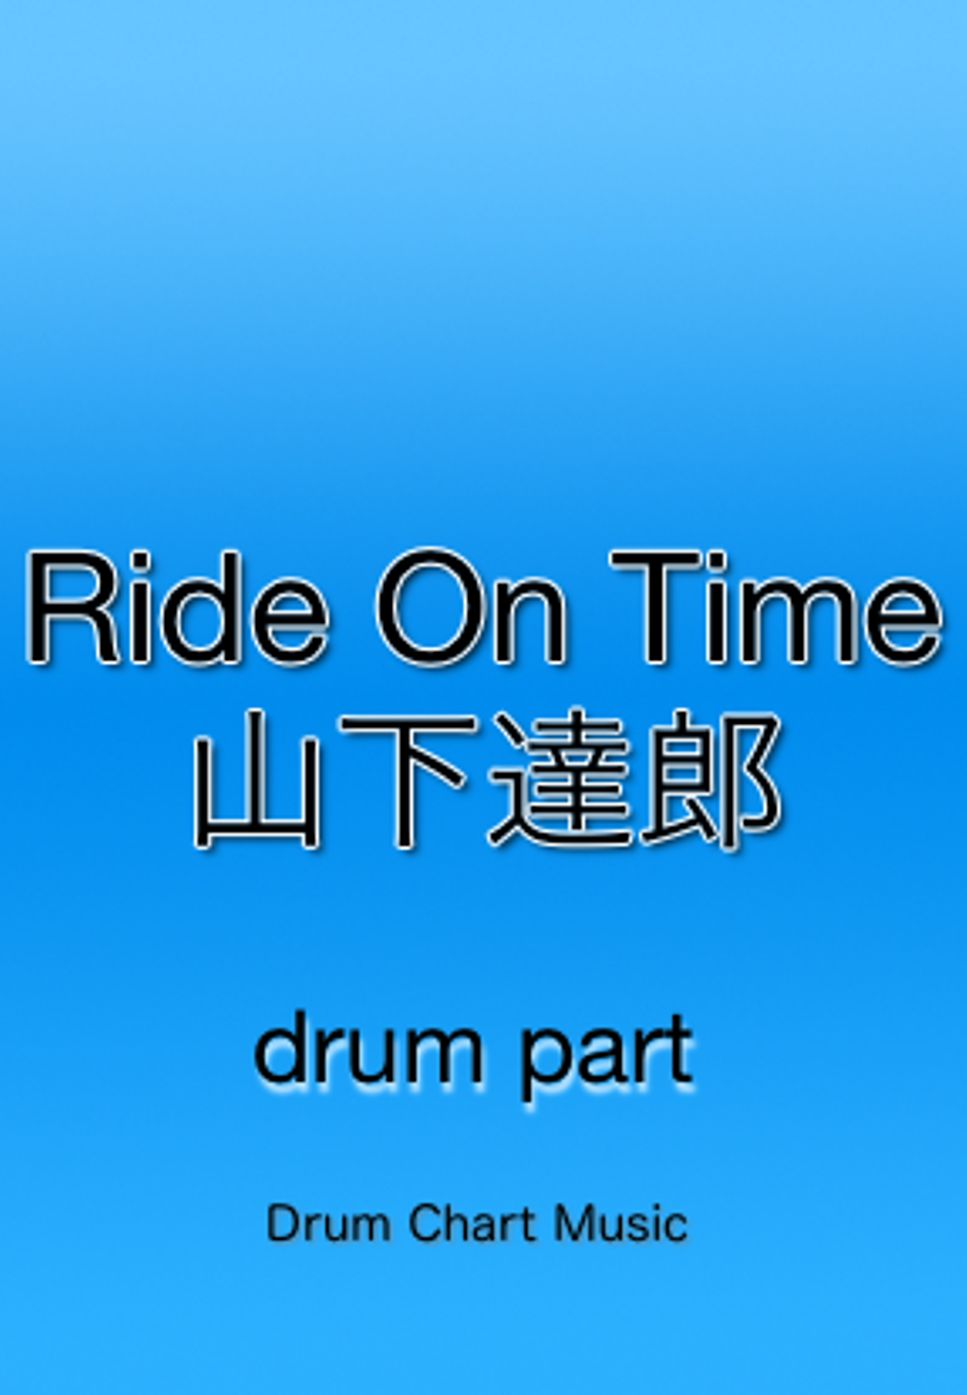 山下 達郎 - Ride On Time by Drum Chart Music